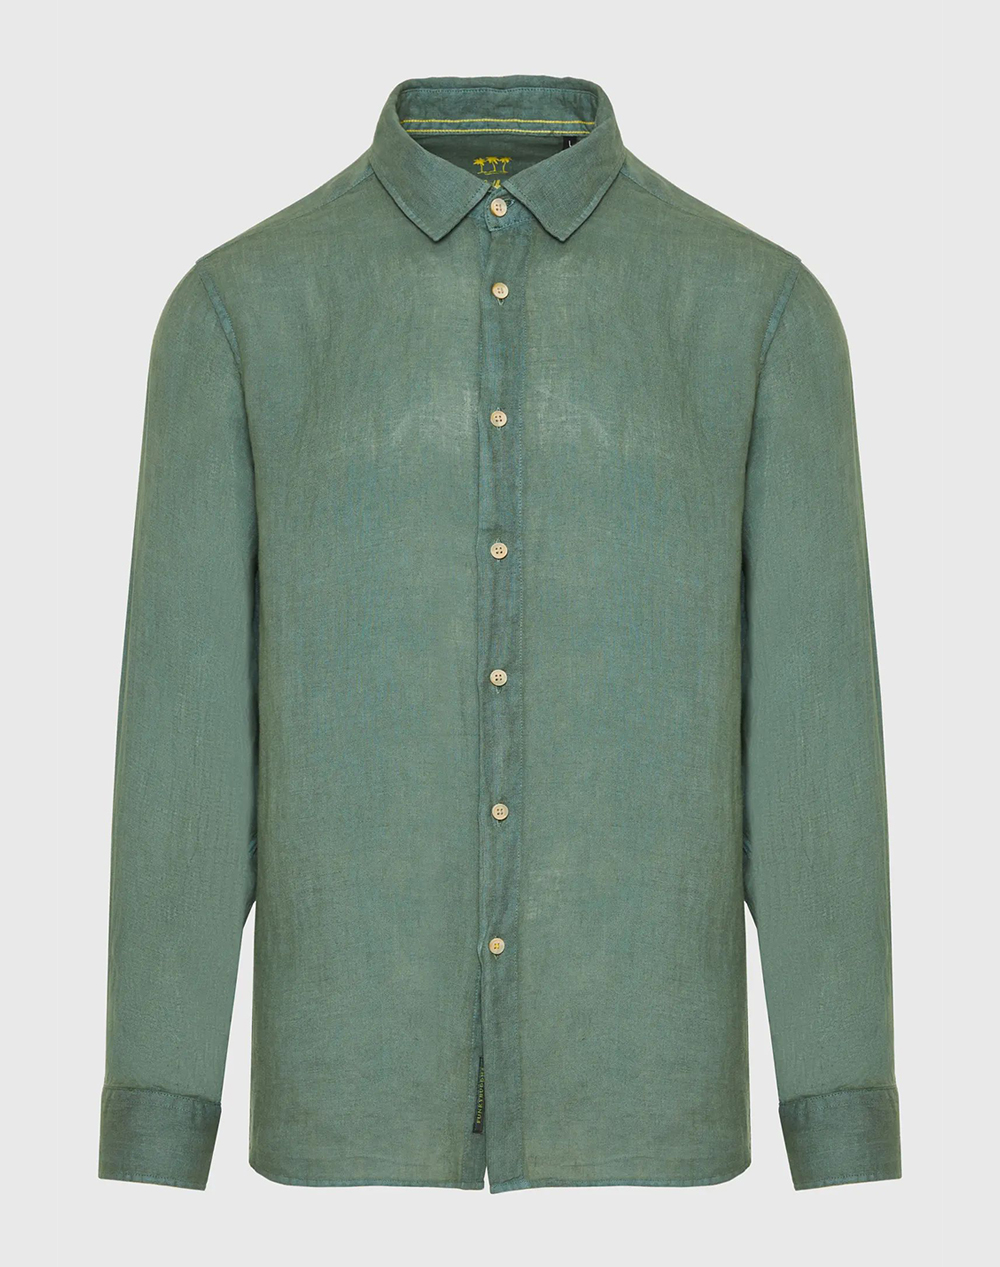 FUNKY BUDDHA Garment dyed λινό πουκάμισο – The essentials FBM009-001-05-FOREST GREEN MediumForestGreen